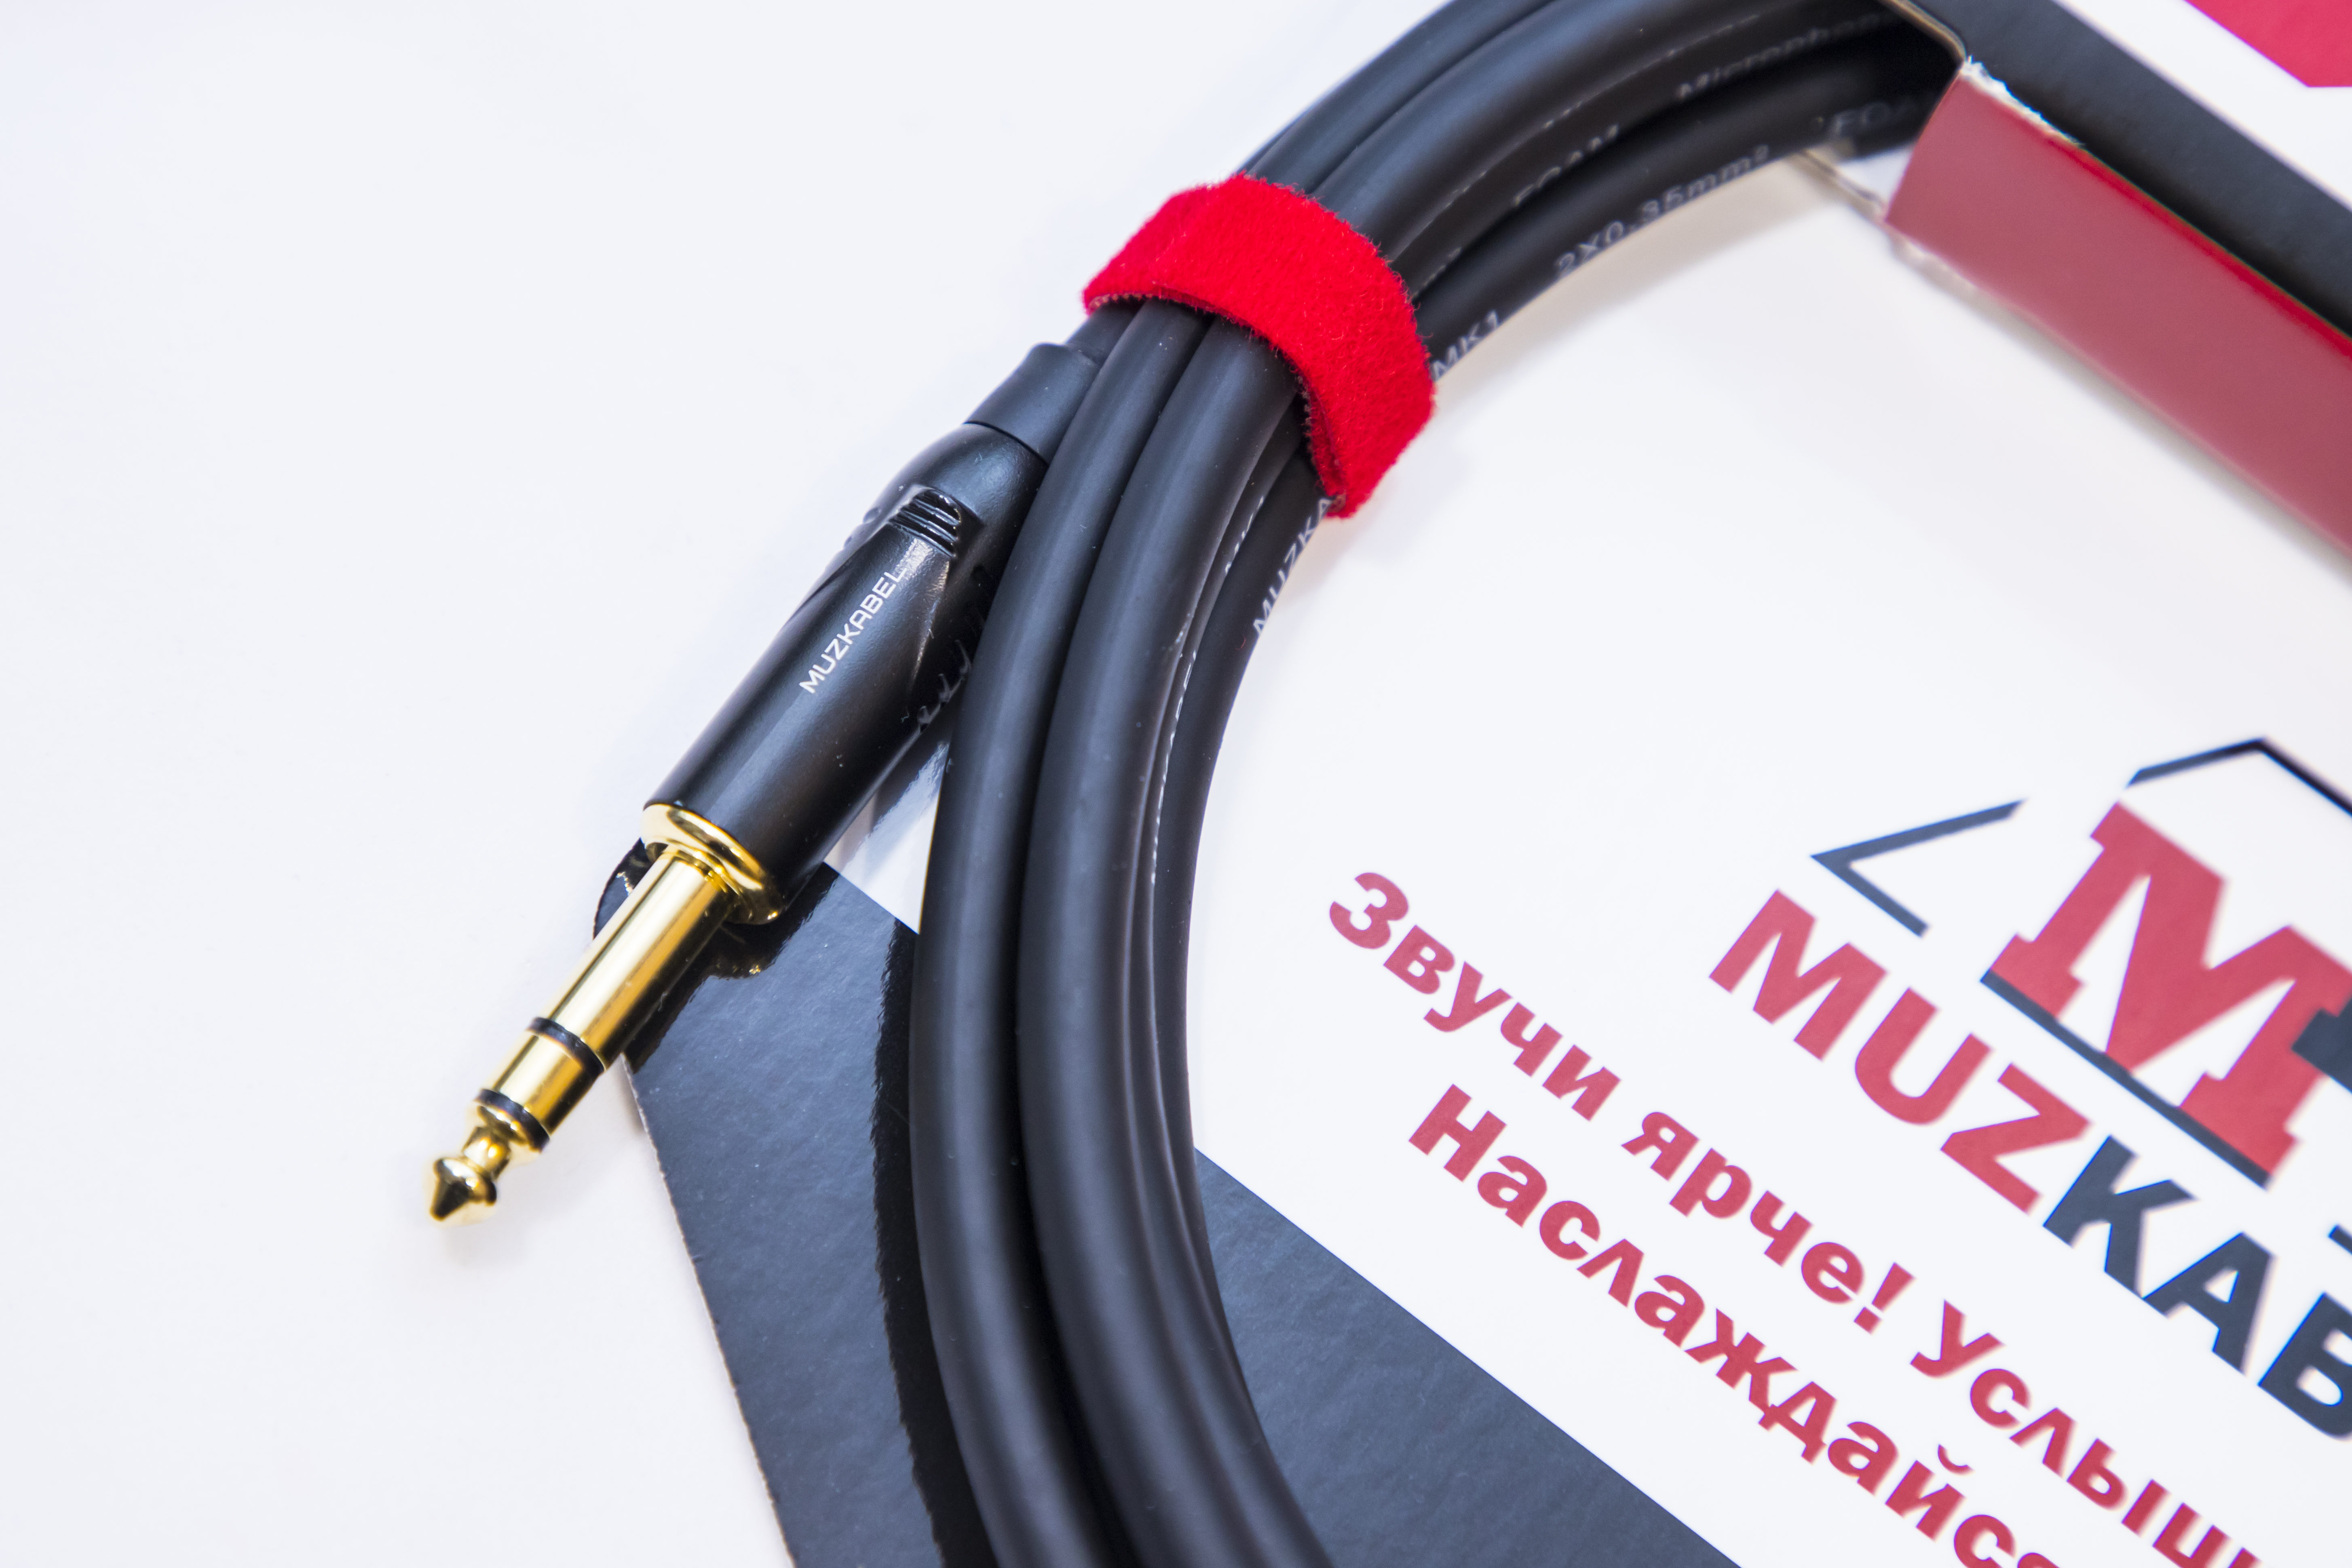 Аудио кабель MUZKABEL BXRMK3 - 3 метра, XLR (папа) - JACK (стерео)